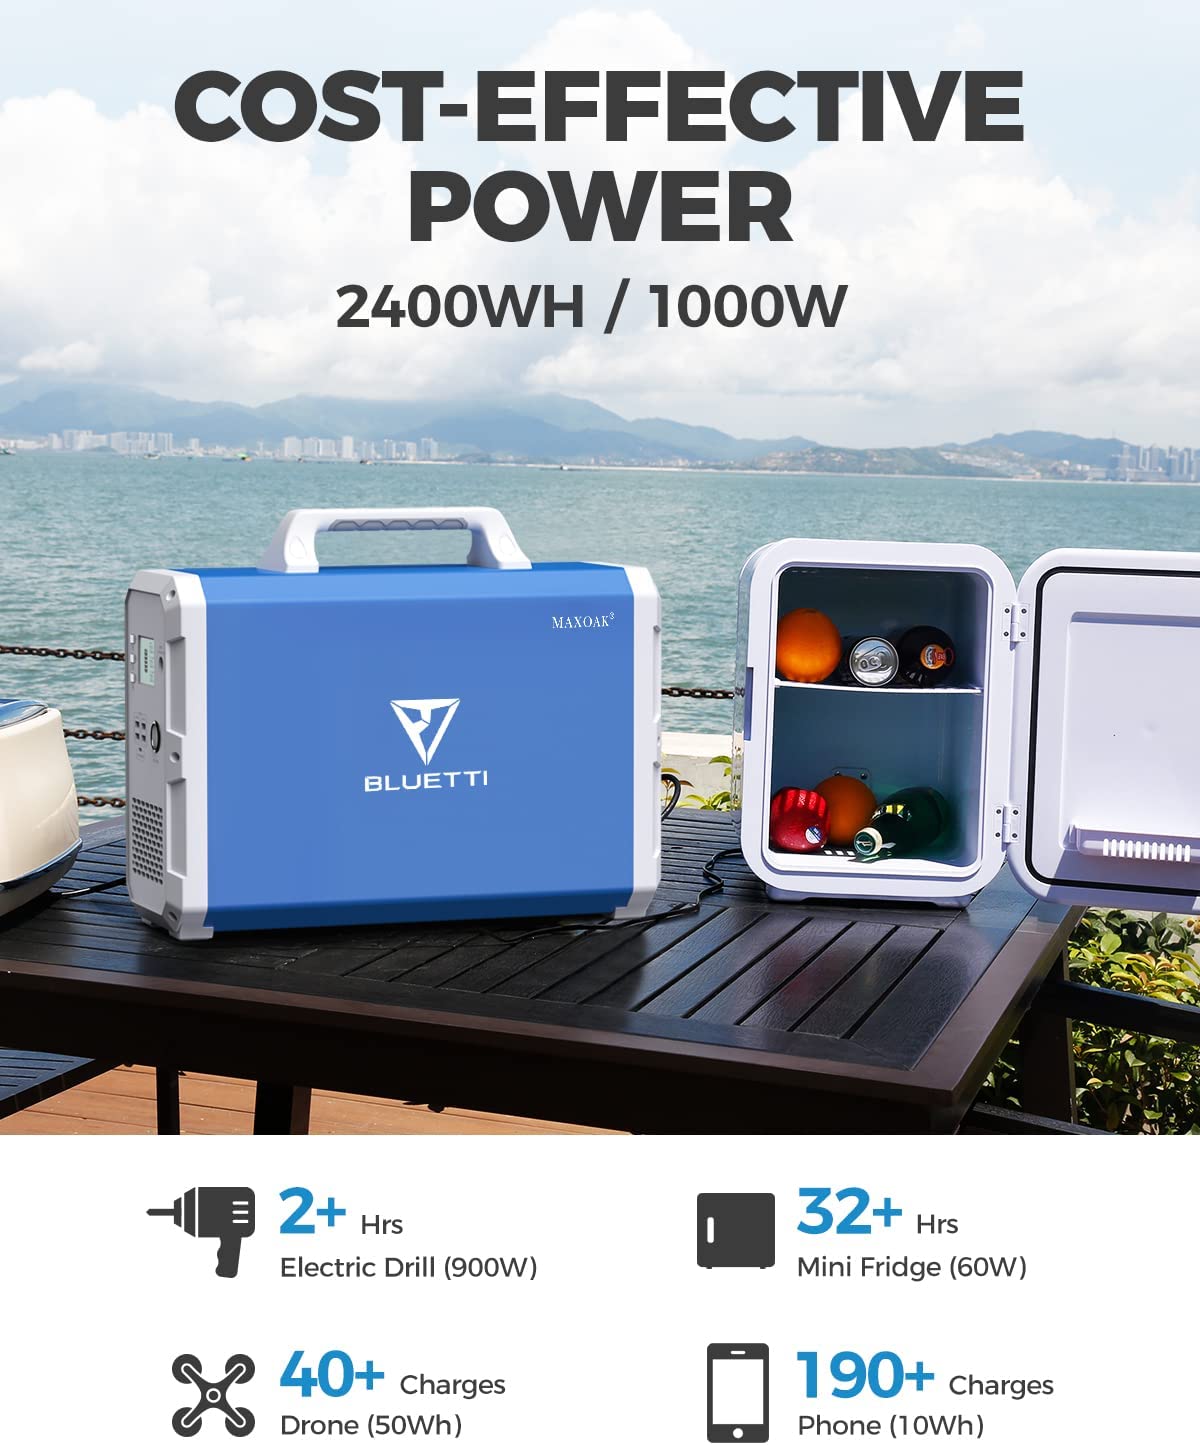 El generador Bluetti EB240 2400Wh es costo efectivo y economico.